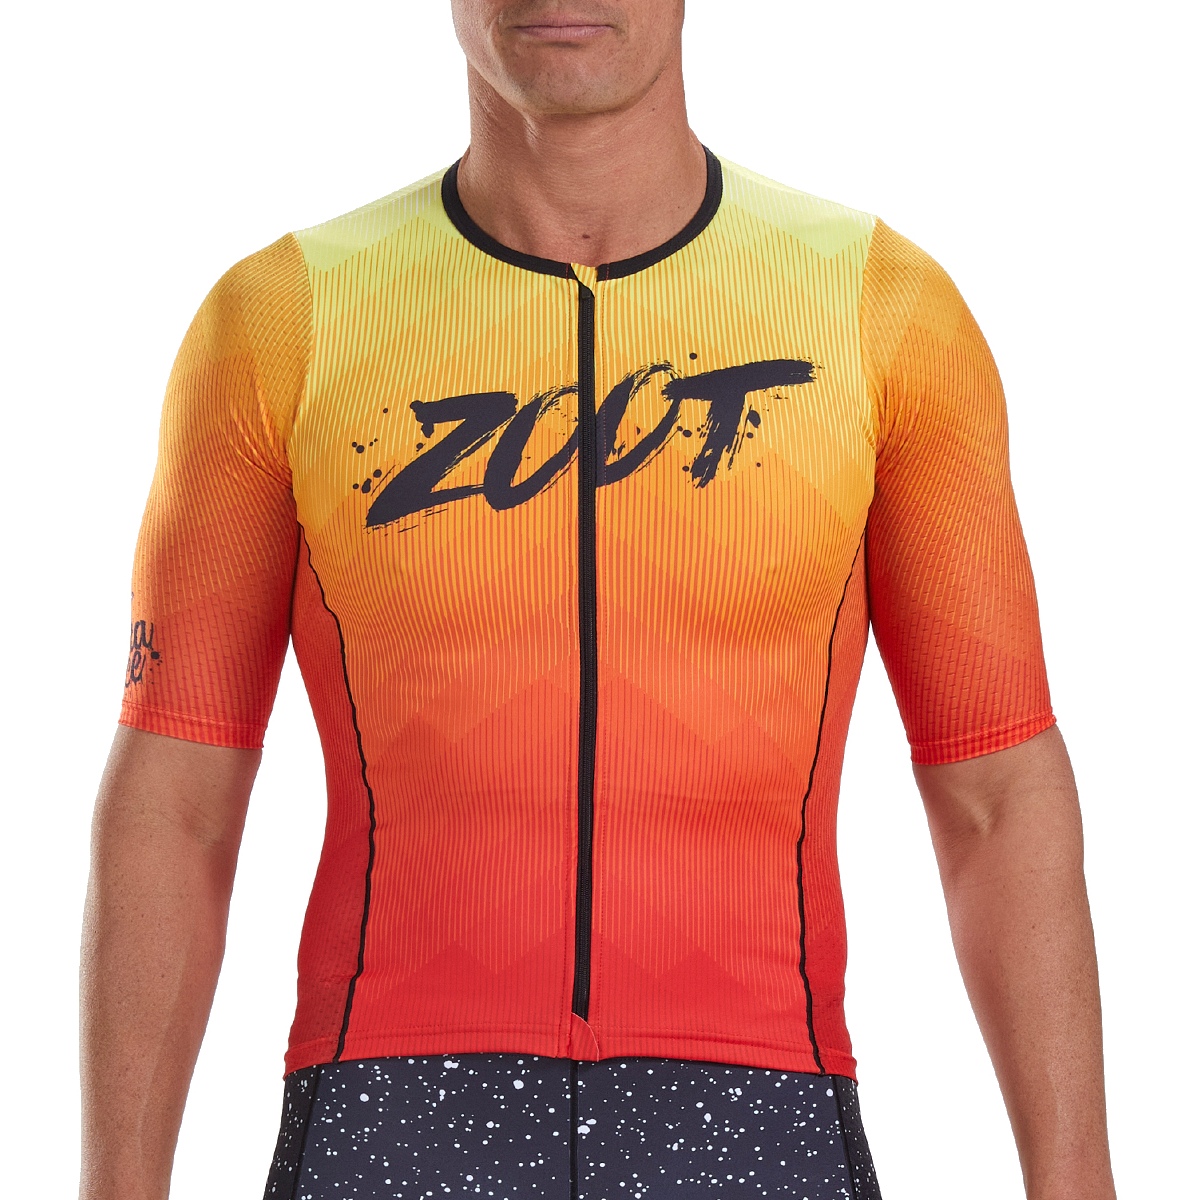 Produktbild von ZOOT Herren LTD Triathlon Aero Fahrradtrikot - kona ice